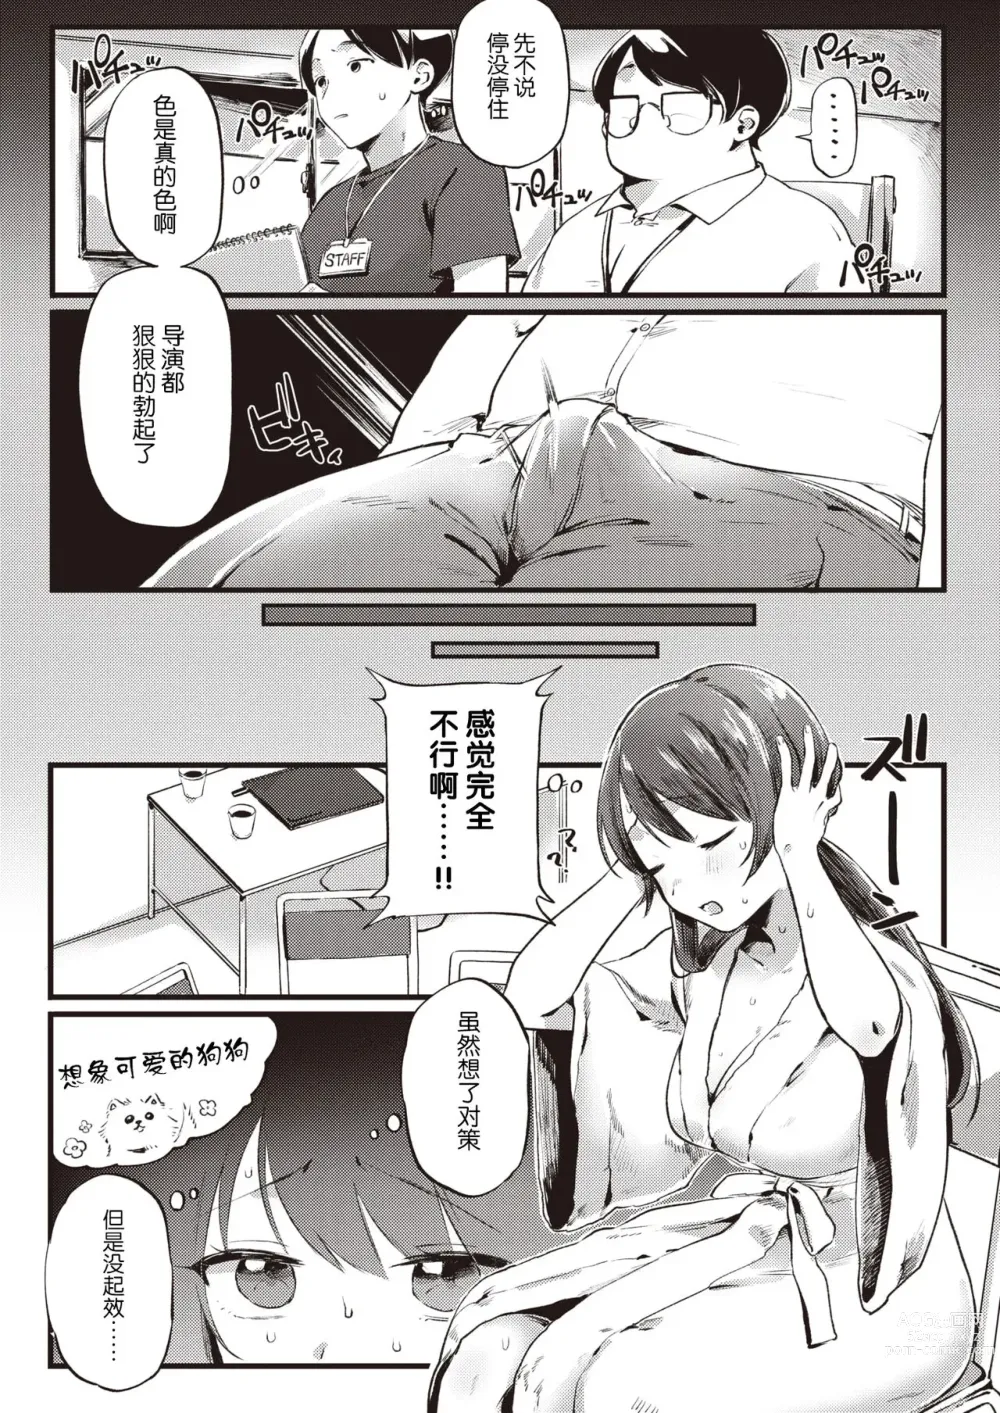 Page 8 of manga Ganbare Kanon-chan